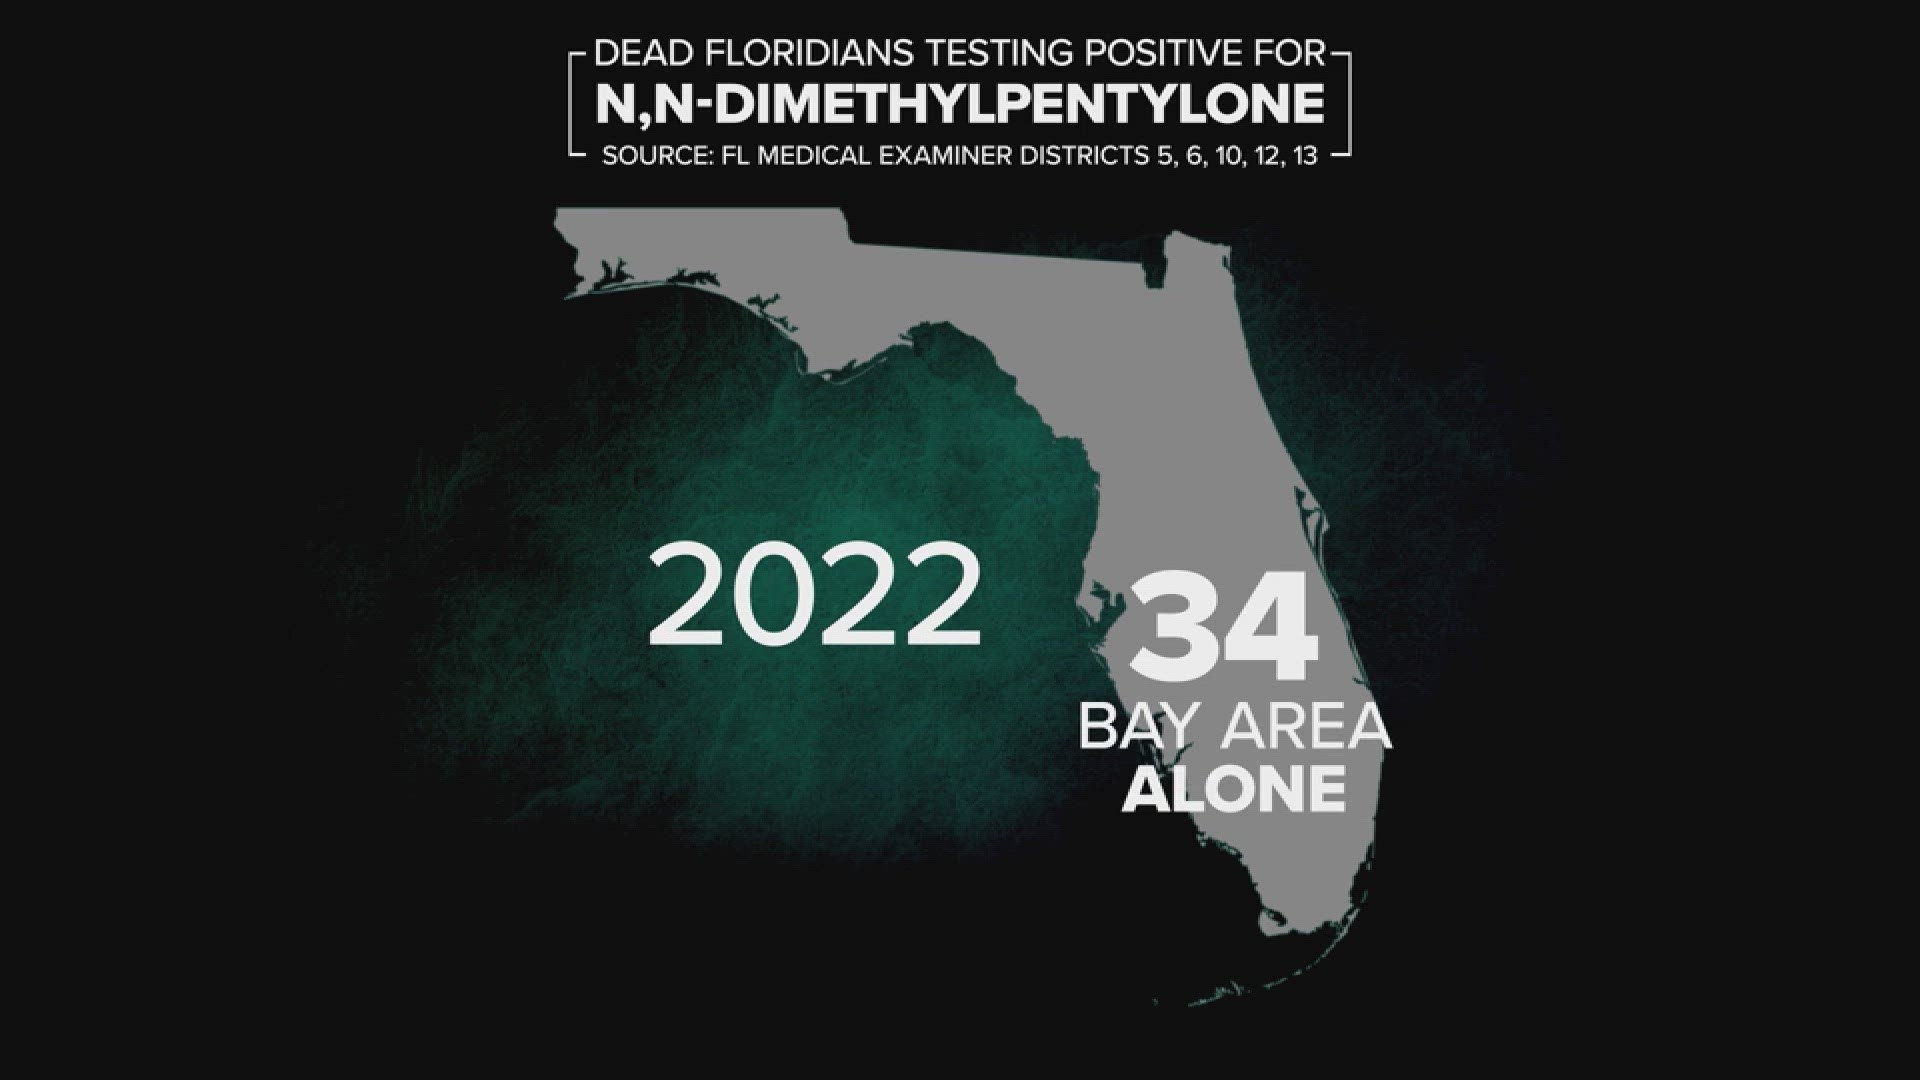 Tampa Bay 2022 N,N-Dimethylpentylone deaths